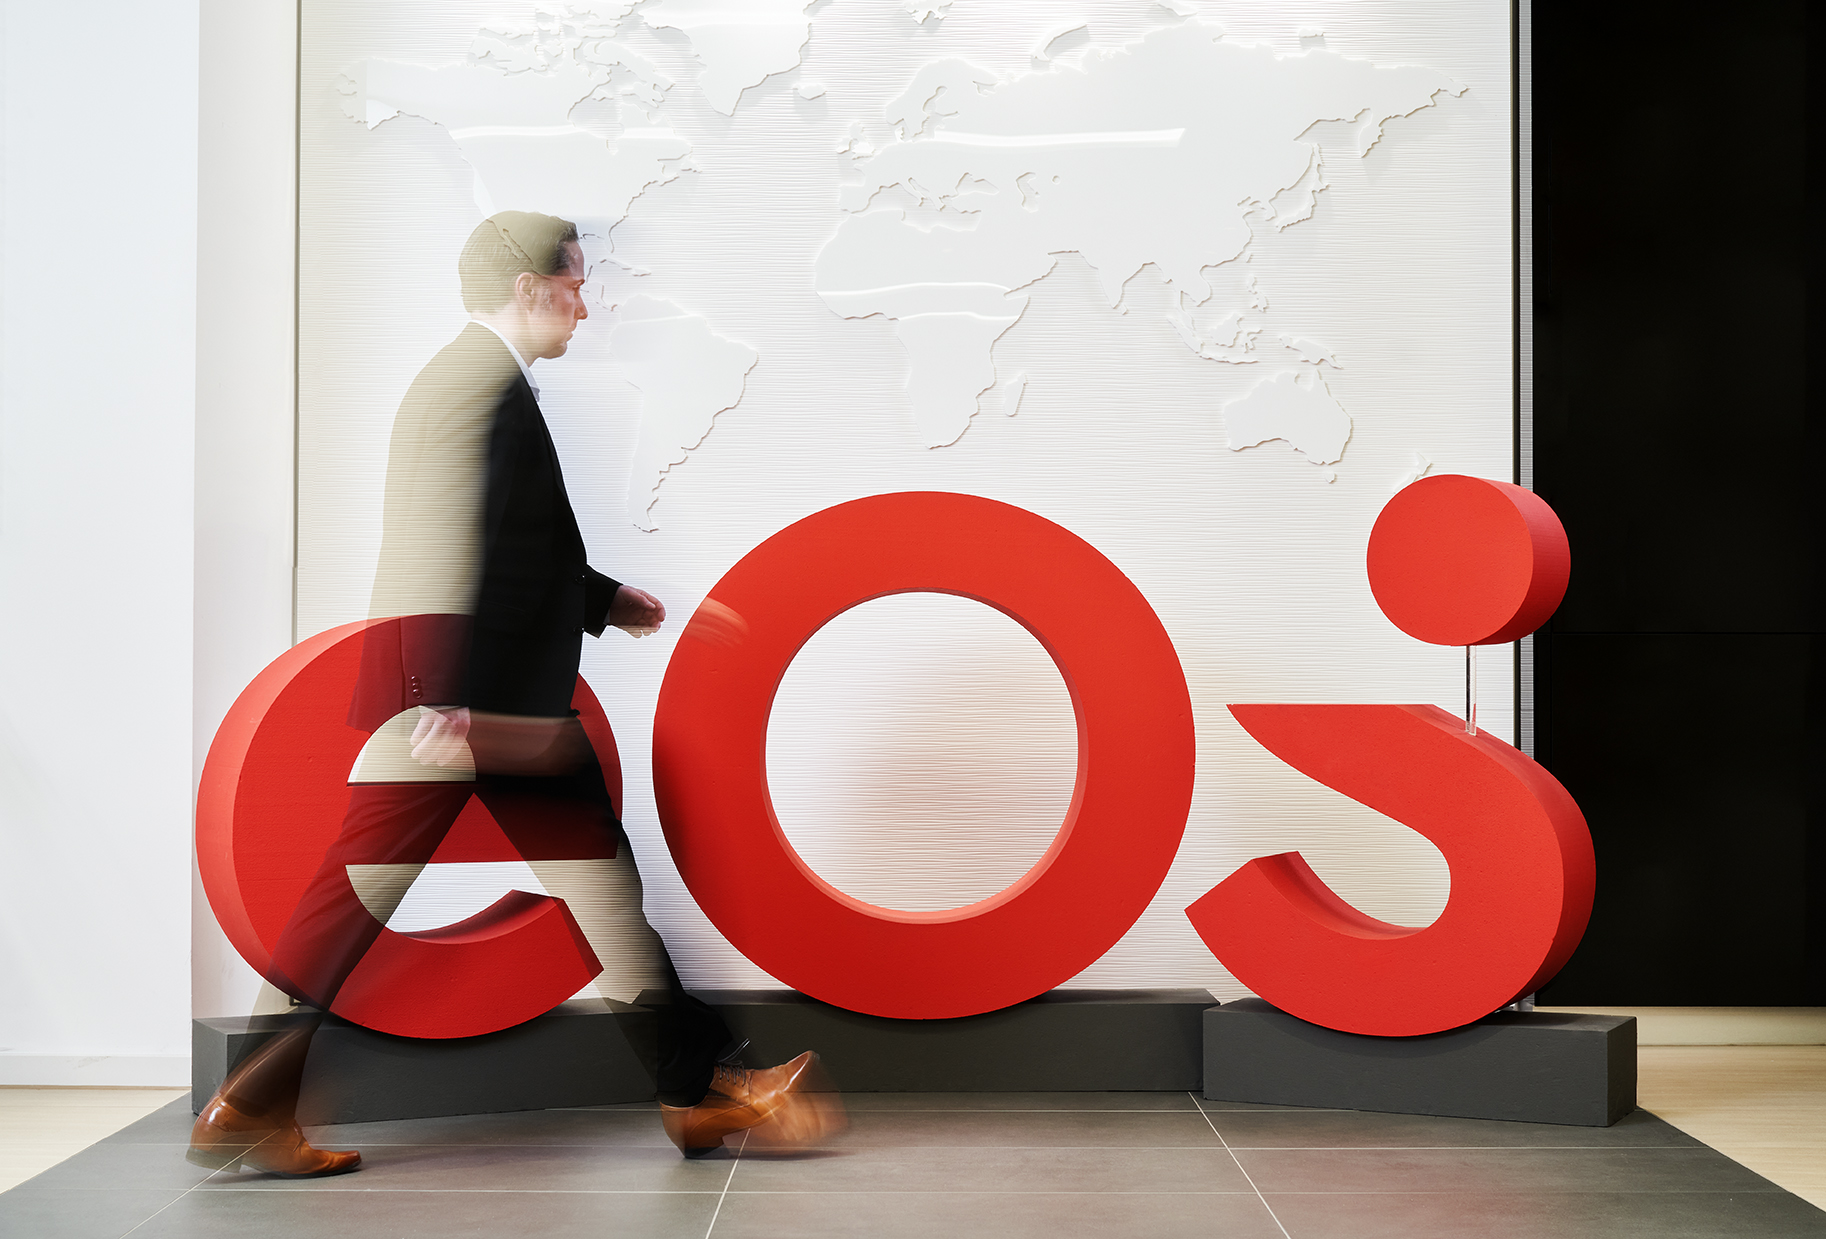 Voici la nouvelle marque EOS : Le nouveau logo décore le hall d’accueil du siège social d’EOS.